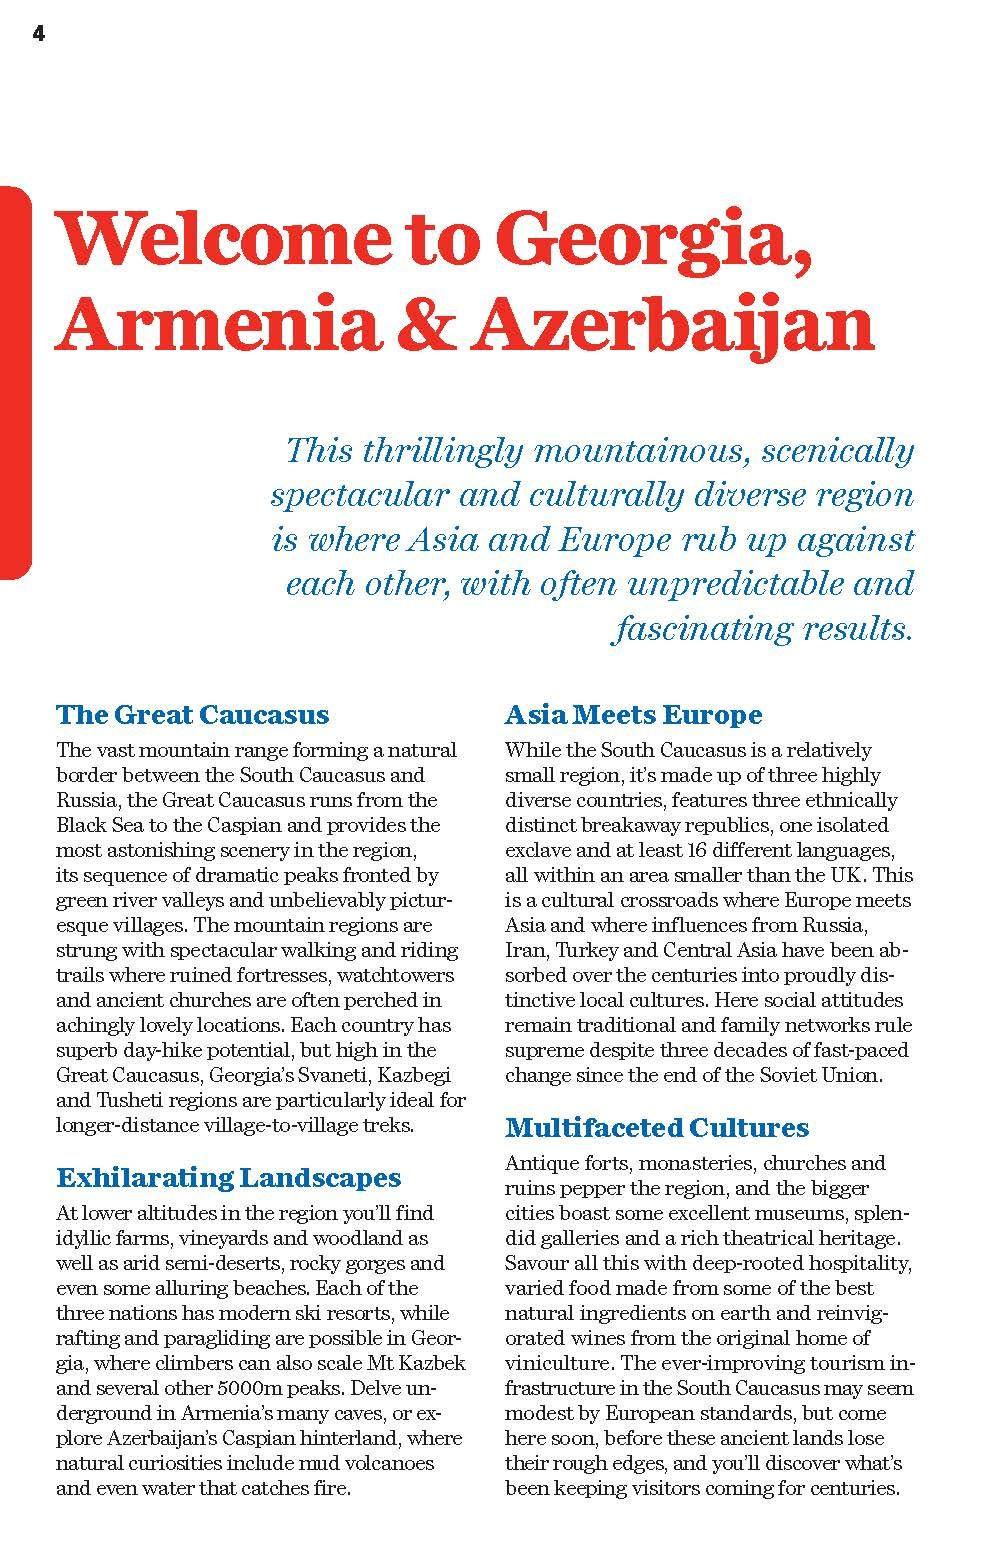 Guide de voyage (en anglais) - Georgia, Armenia & Azerbaijan | Lonely Planet guide de voyage Lonely Planet 